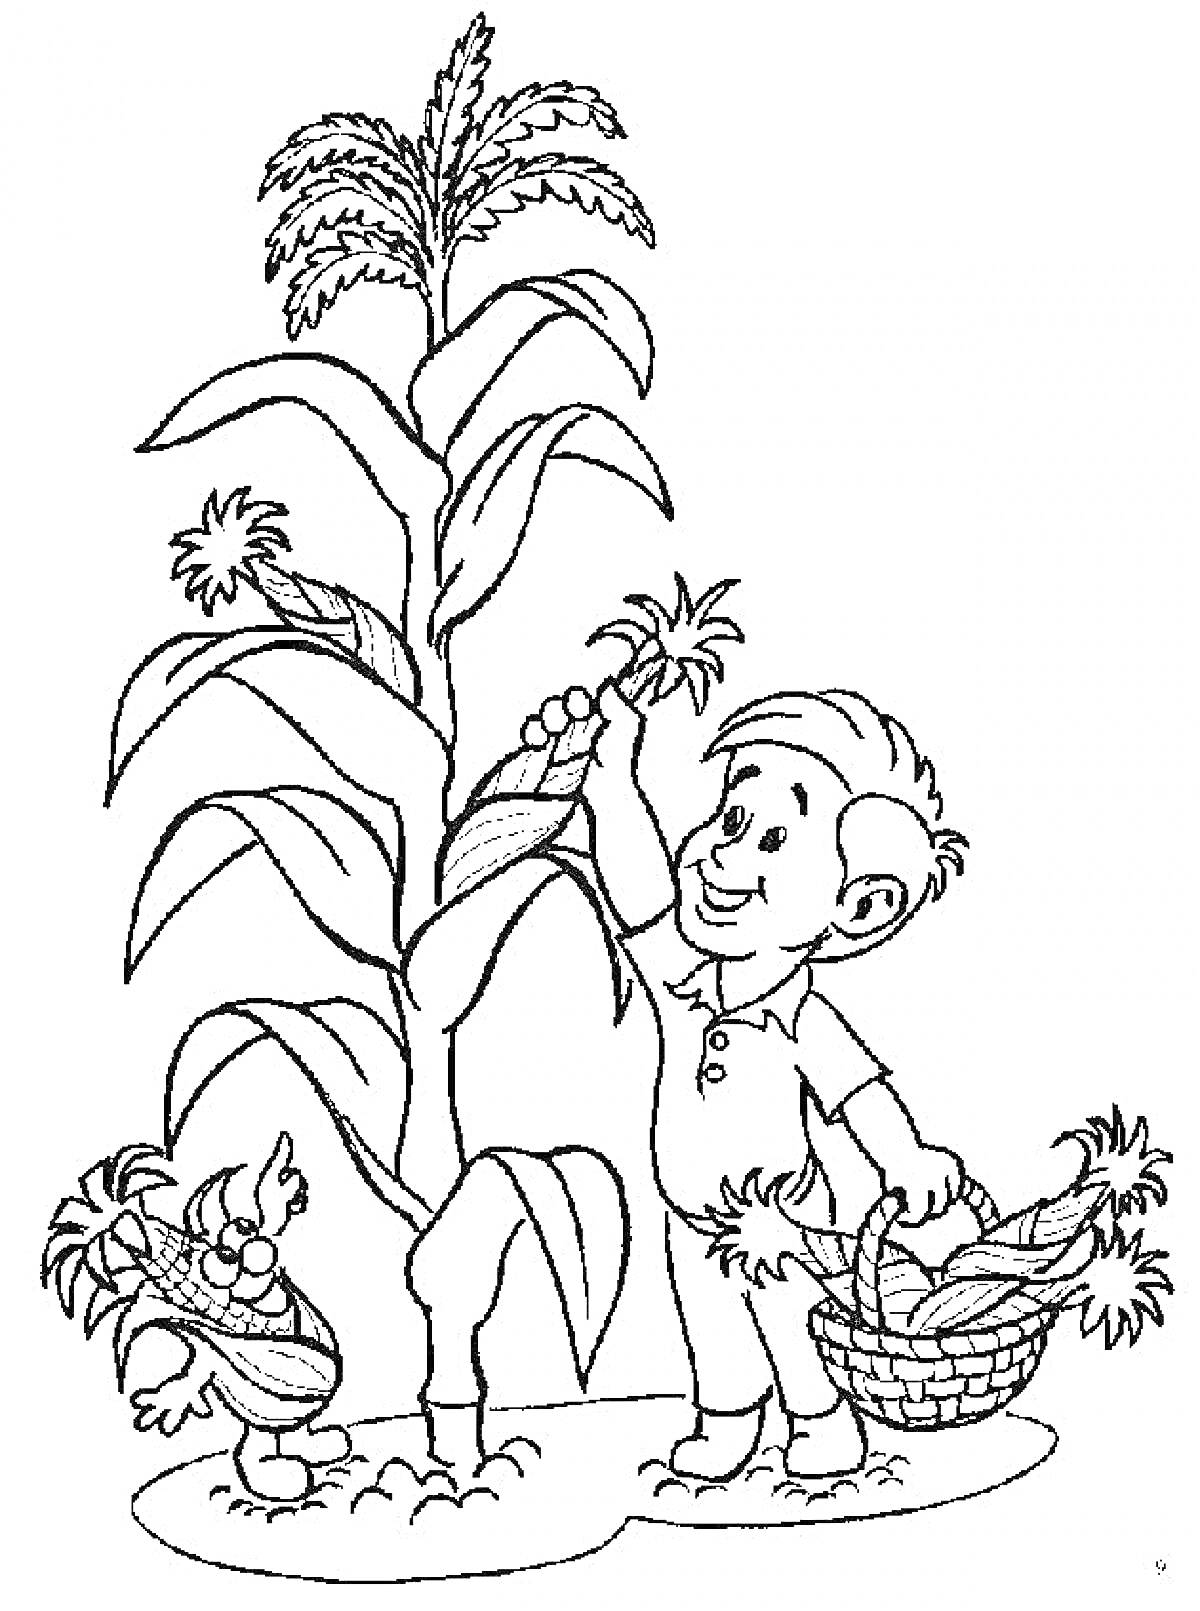 Мальчик с корзиной кукурузы и высоким растением кукурузы